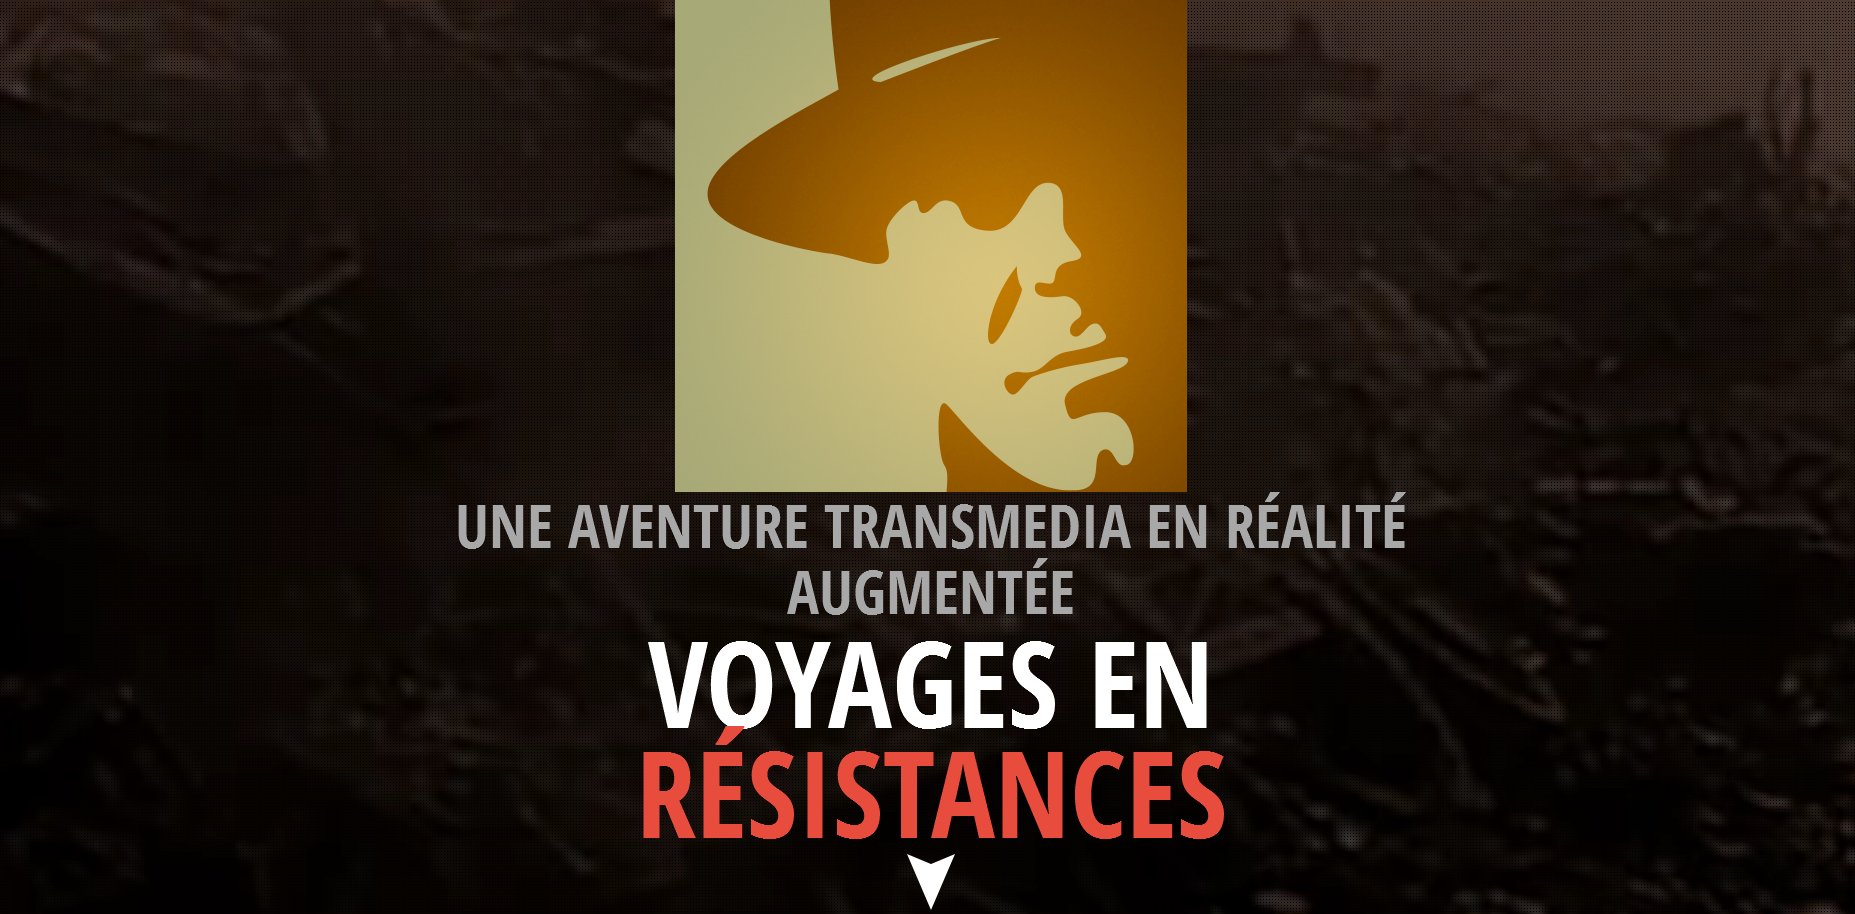 screenshot-www.voyagesenresistances.fr-2018-01-22-14-22-57.png